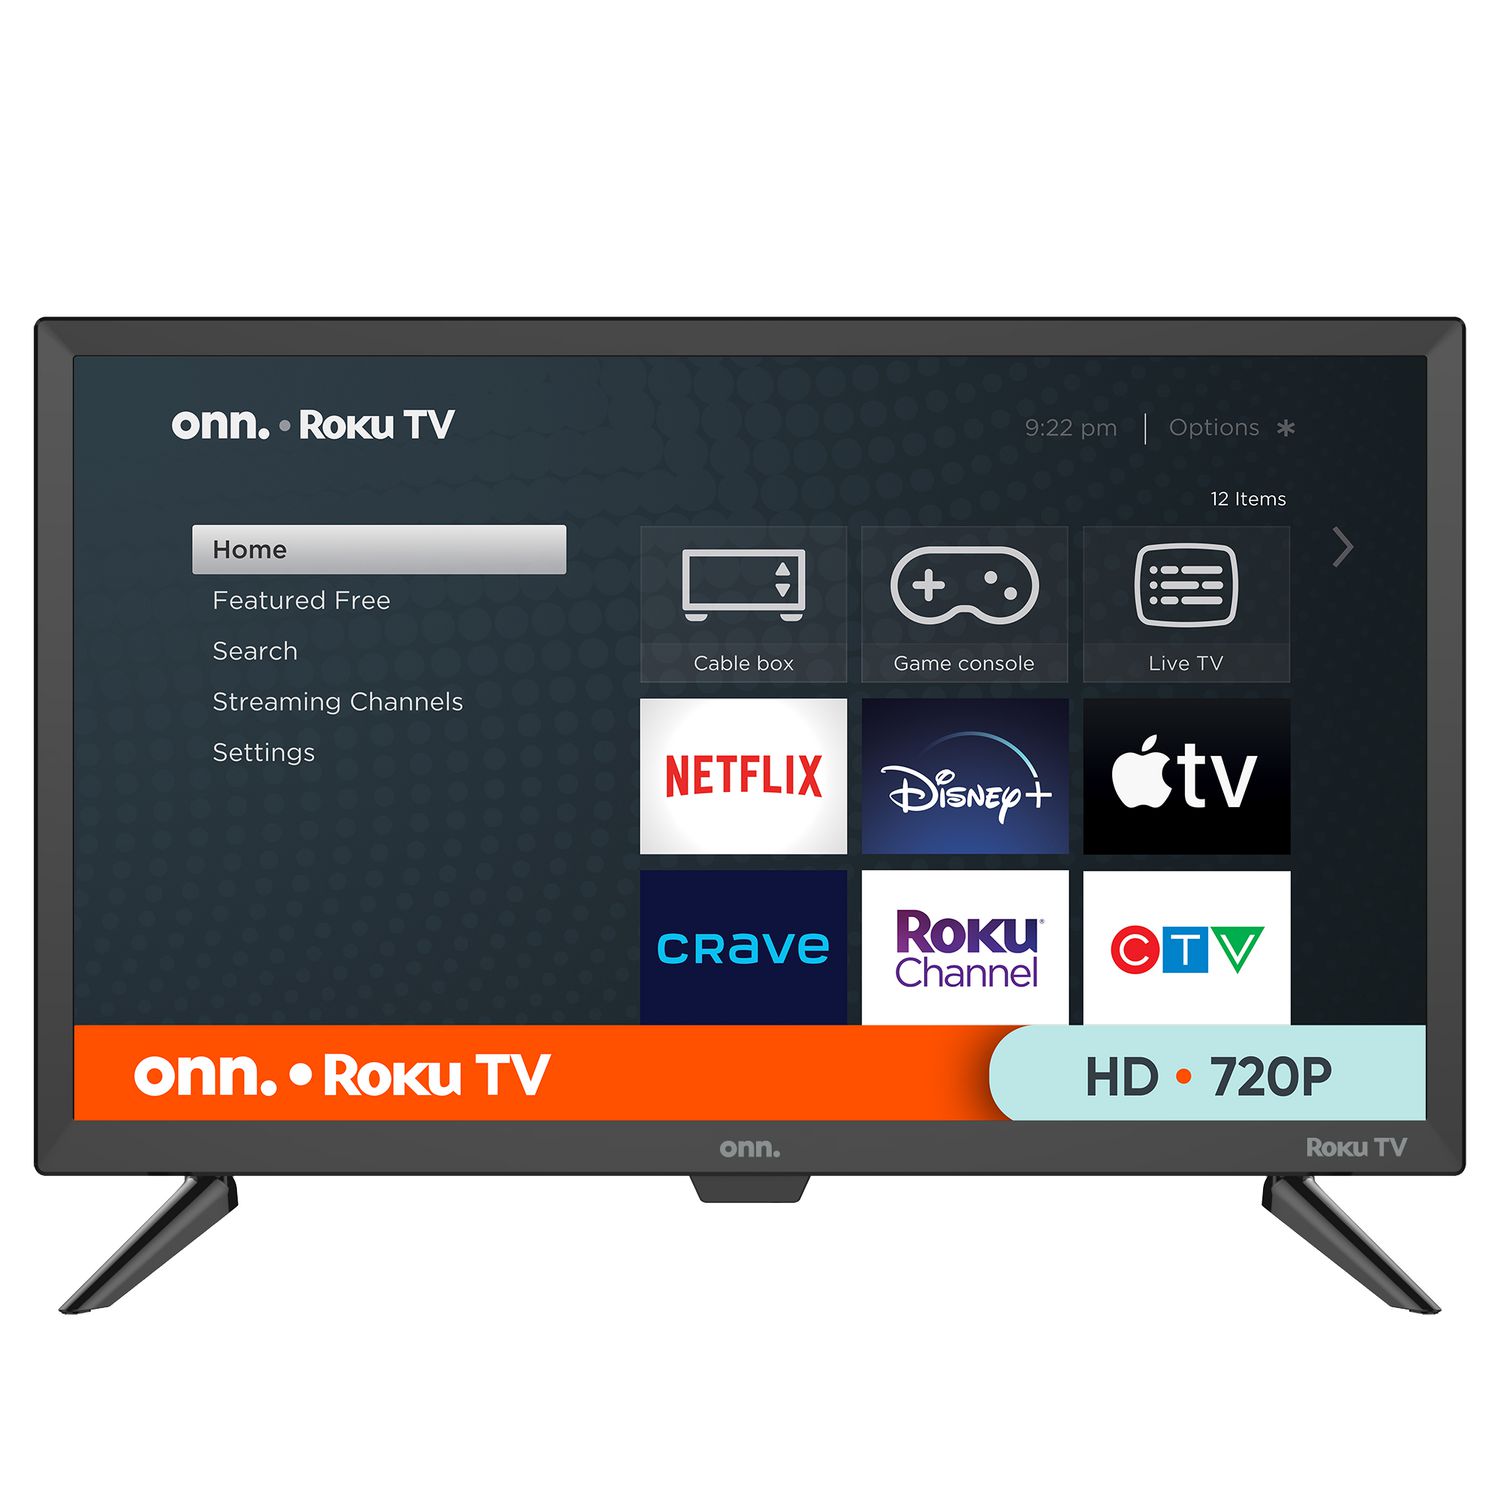 Un écran plat 24 pouces Full HD Smart TV LED de couleur - Chine Téléviseur  LED et TV LCD téléviseur intelligent prix